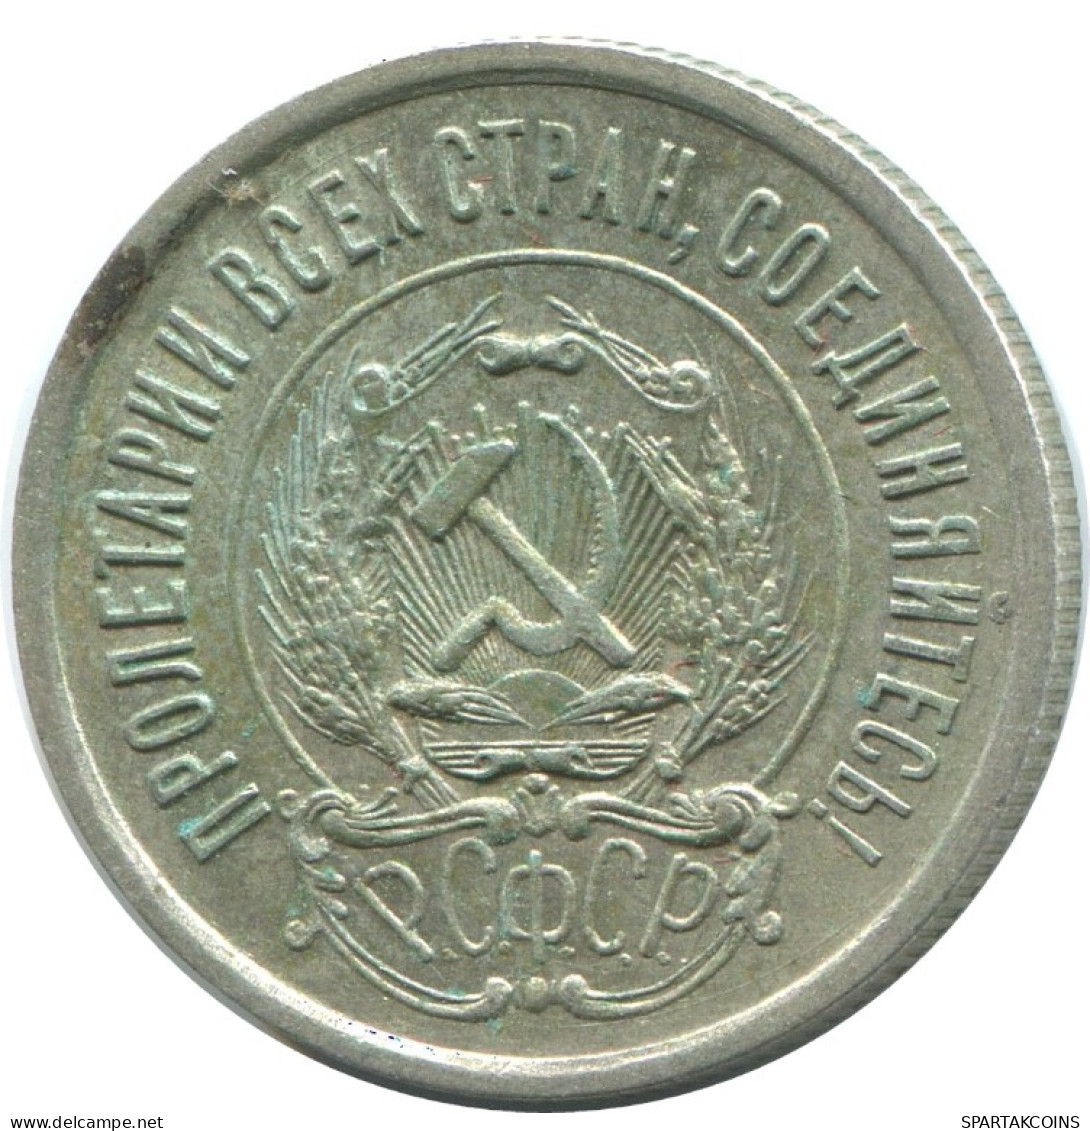 20 KOPEKS 1923 RUSSIA RSFSR SILVER Coin HIGH GRADE #AF418.4.U.A - Rusland